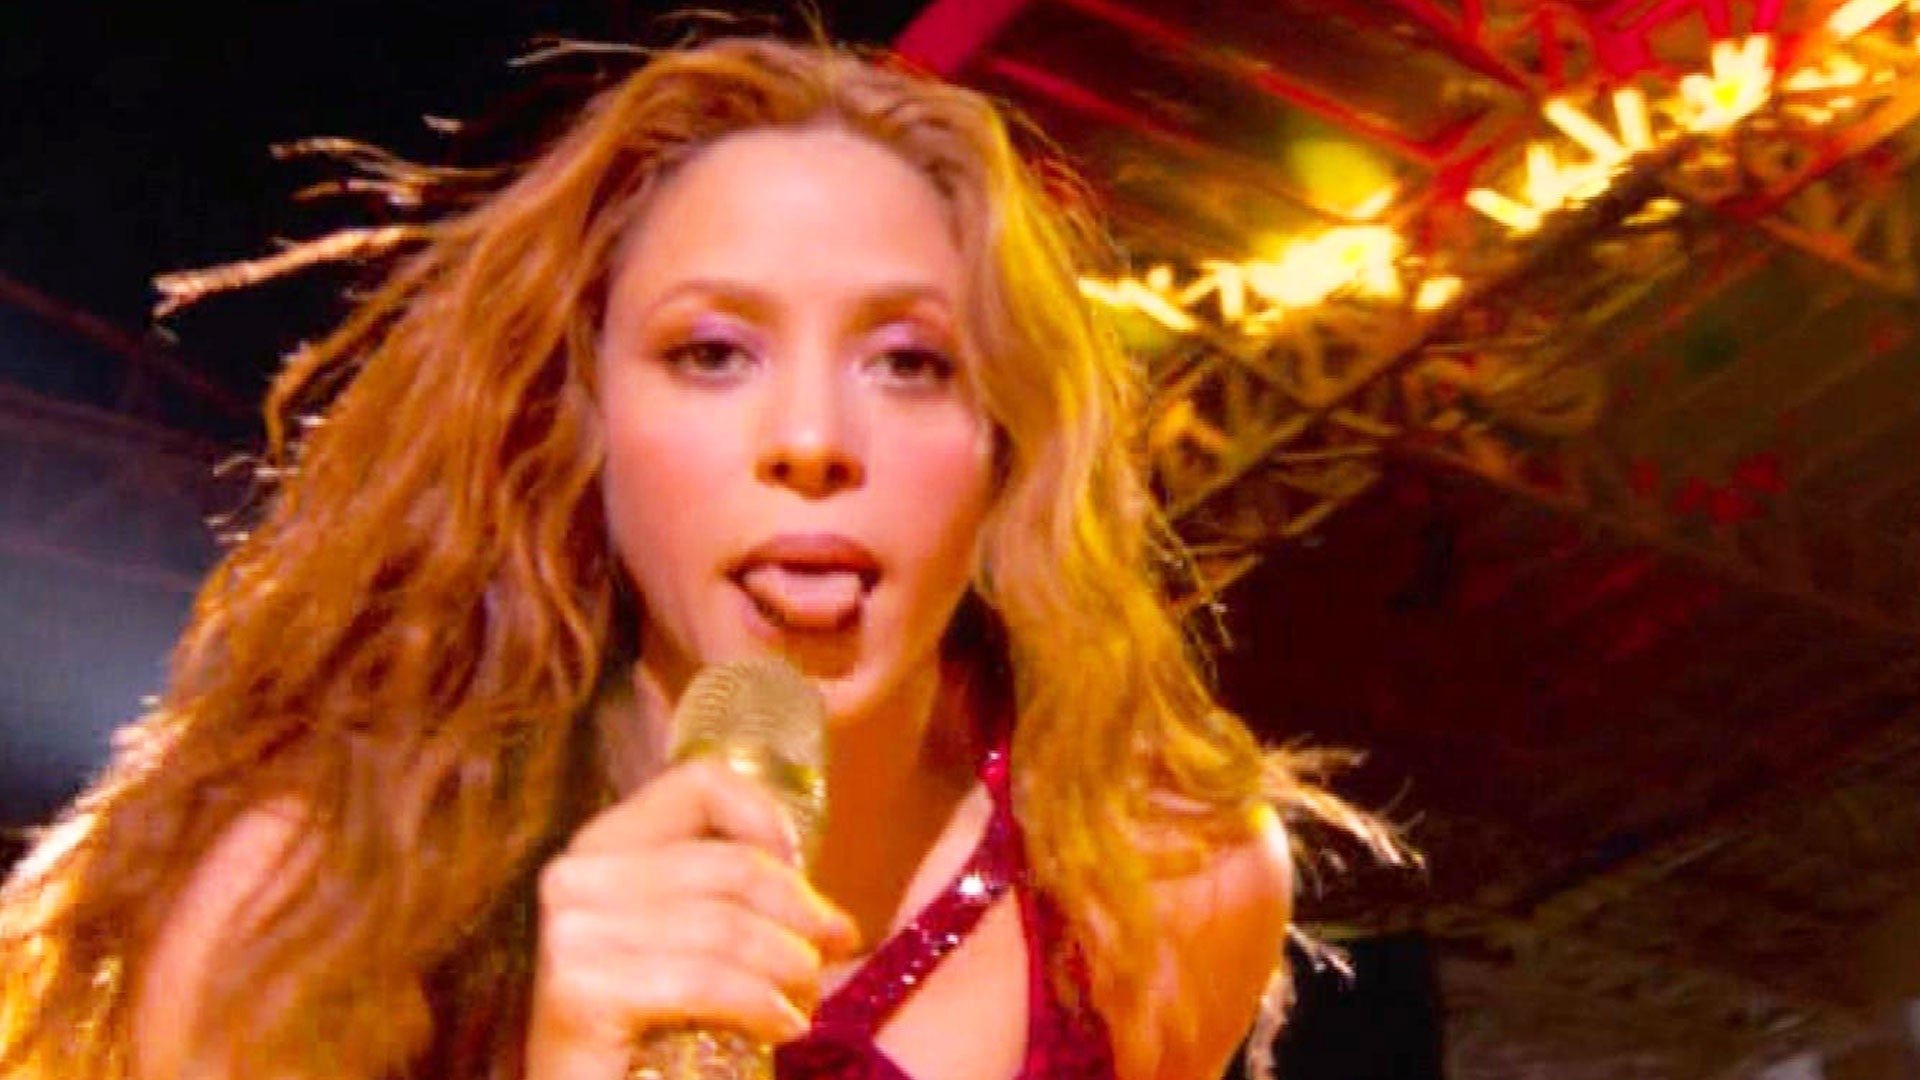 eto a05 shakira demi 020320.jpg?resize=412,232 - La langue de Shakira a beaucoup marqué les esprits durant le Superbowl, mais c'est en fait une référence à ses racines culturelles